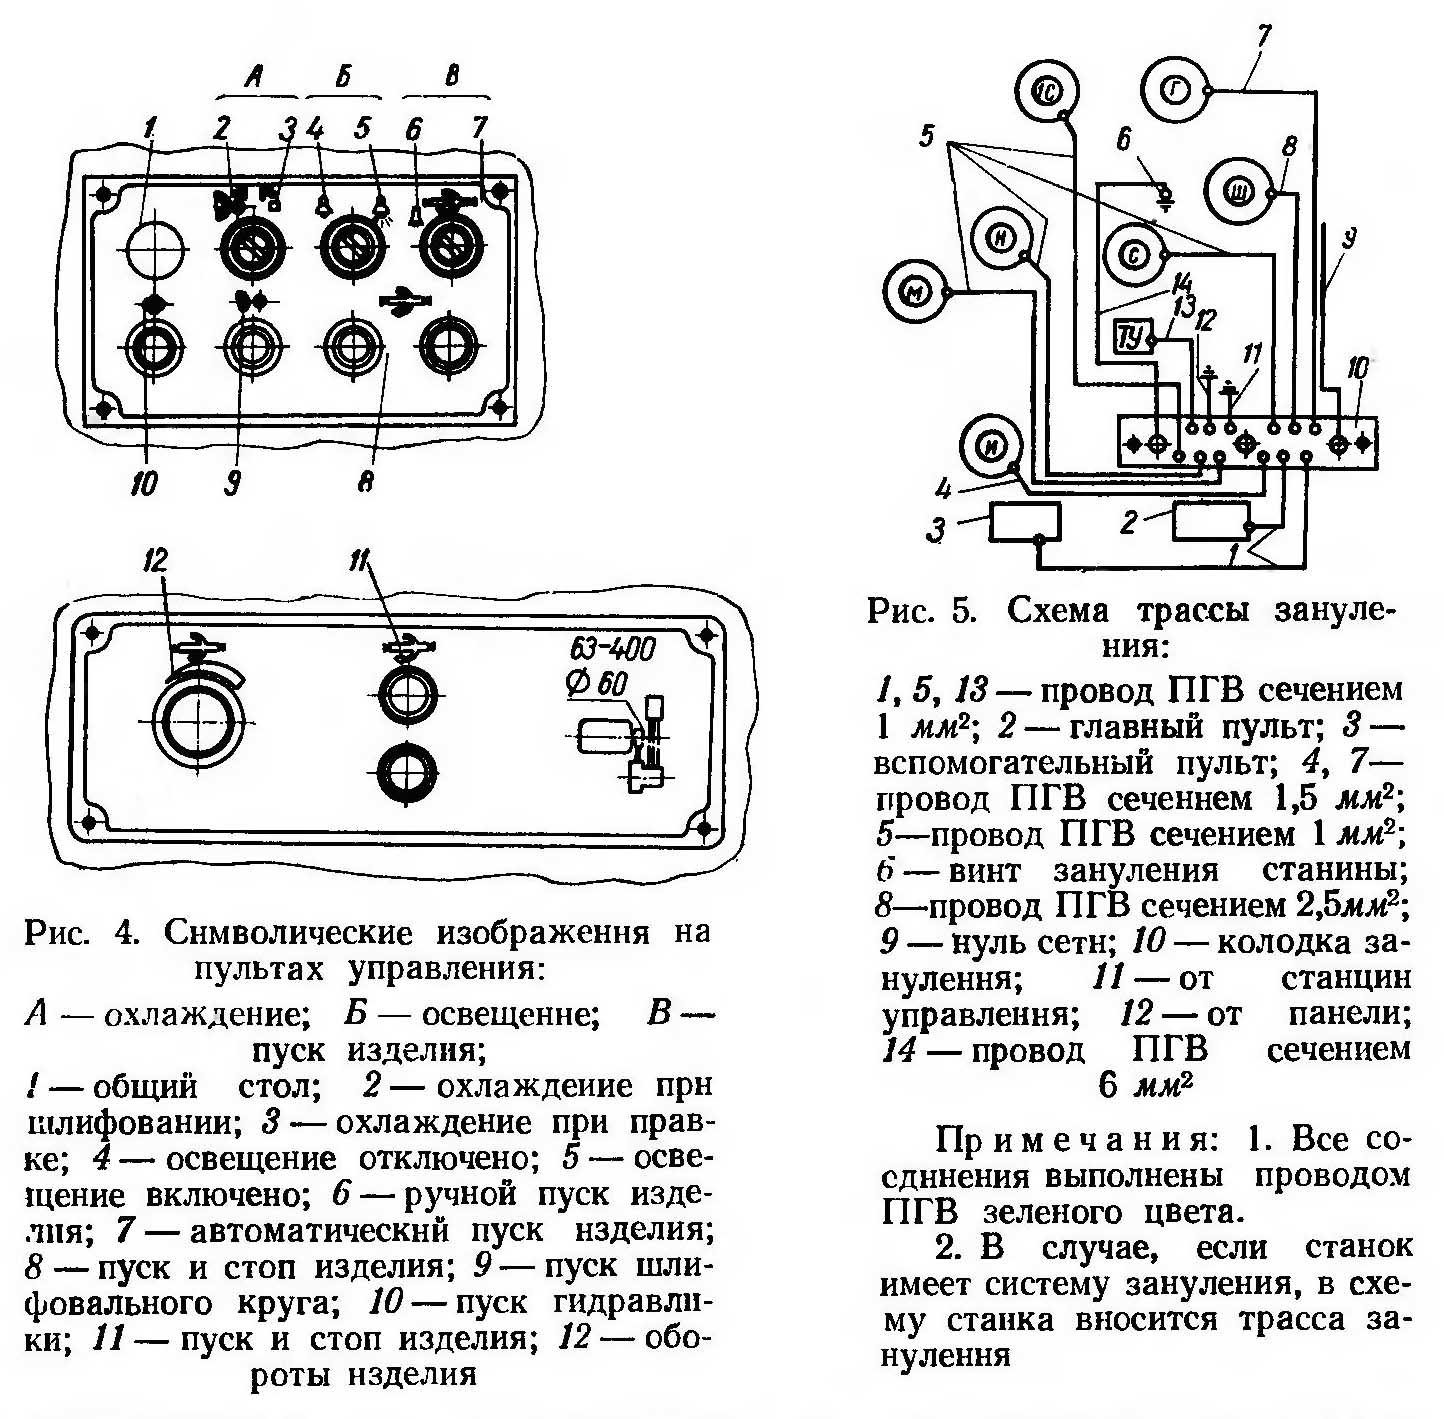 Символические изображения на пультах управления круглошлифовального станка 3А151